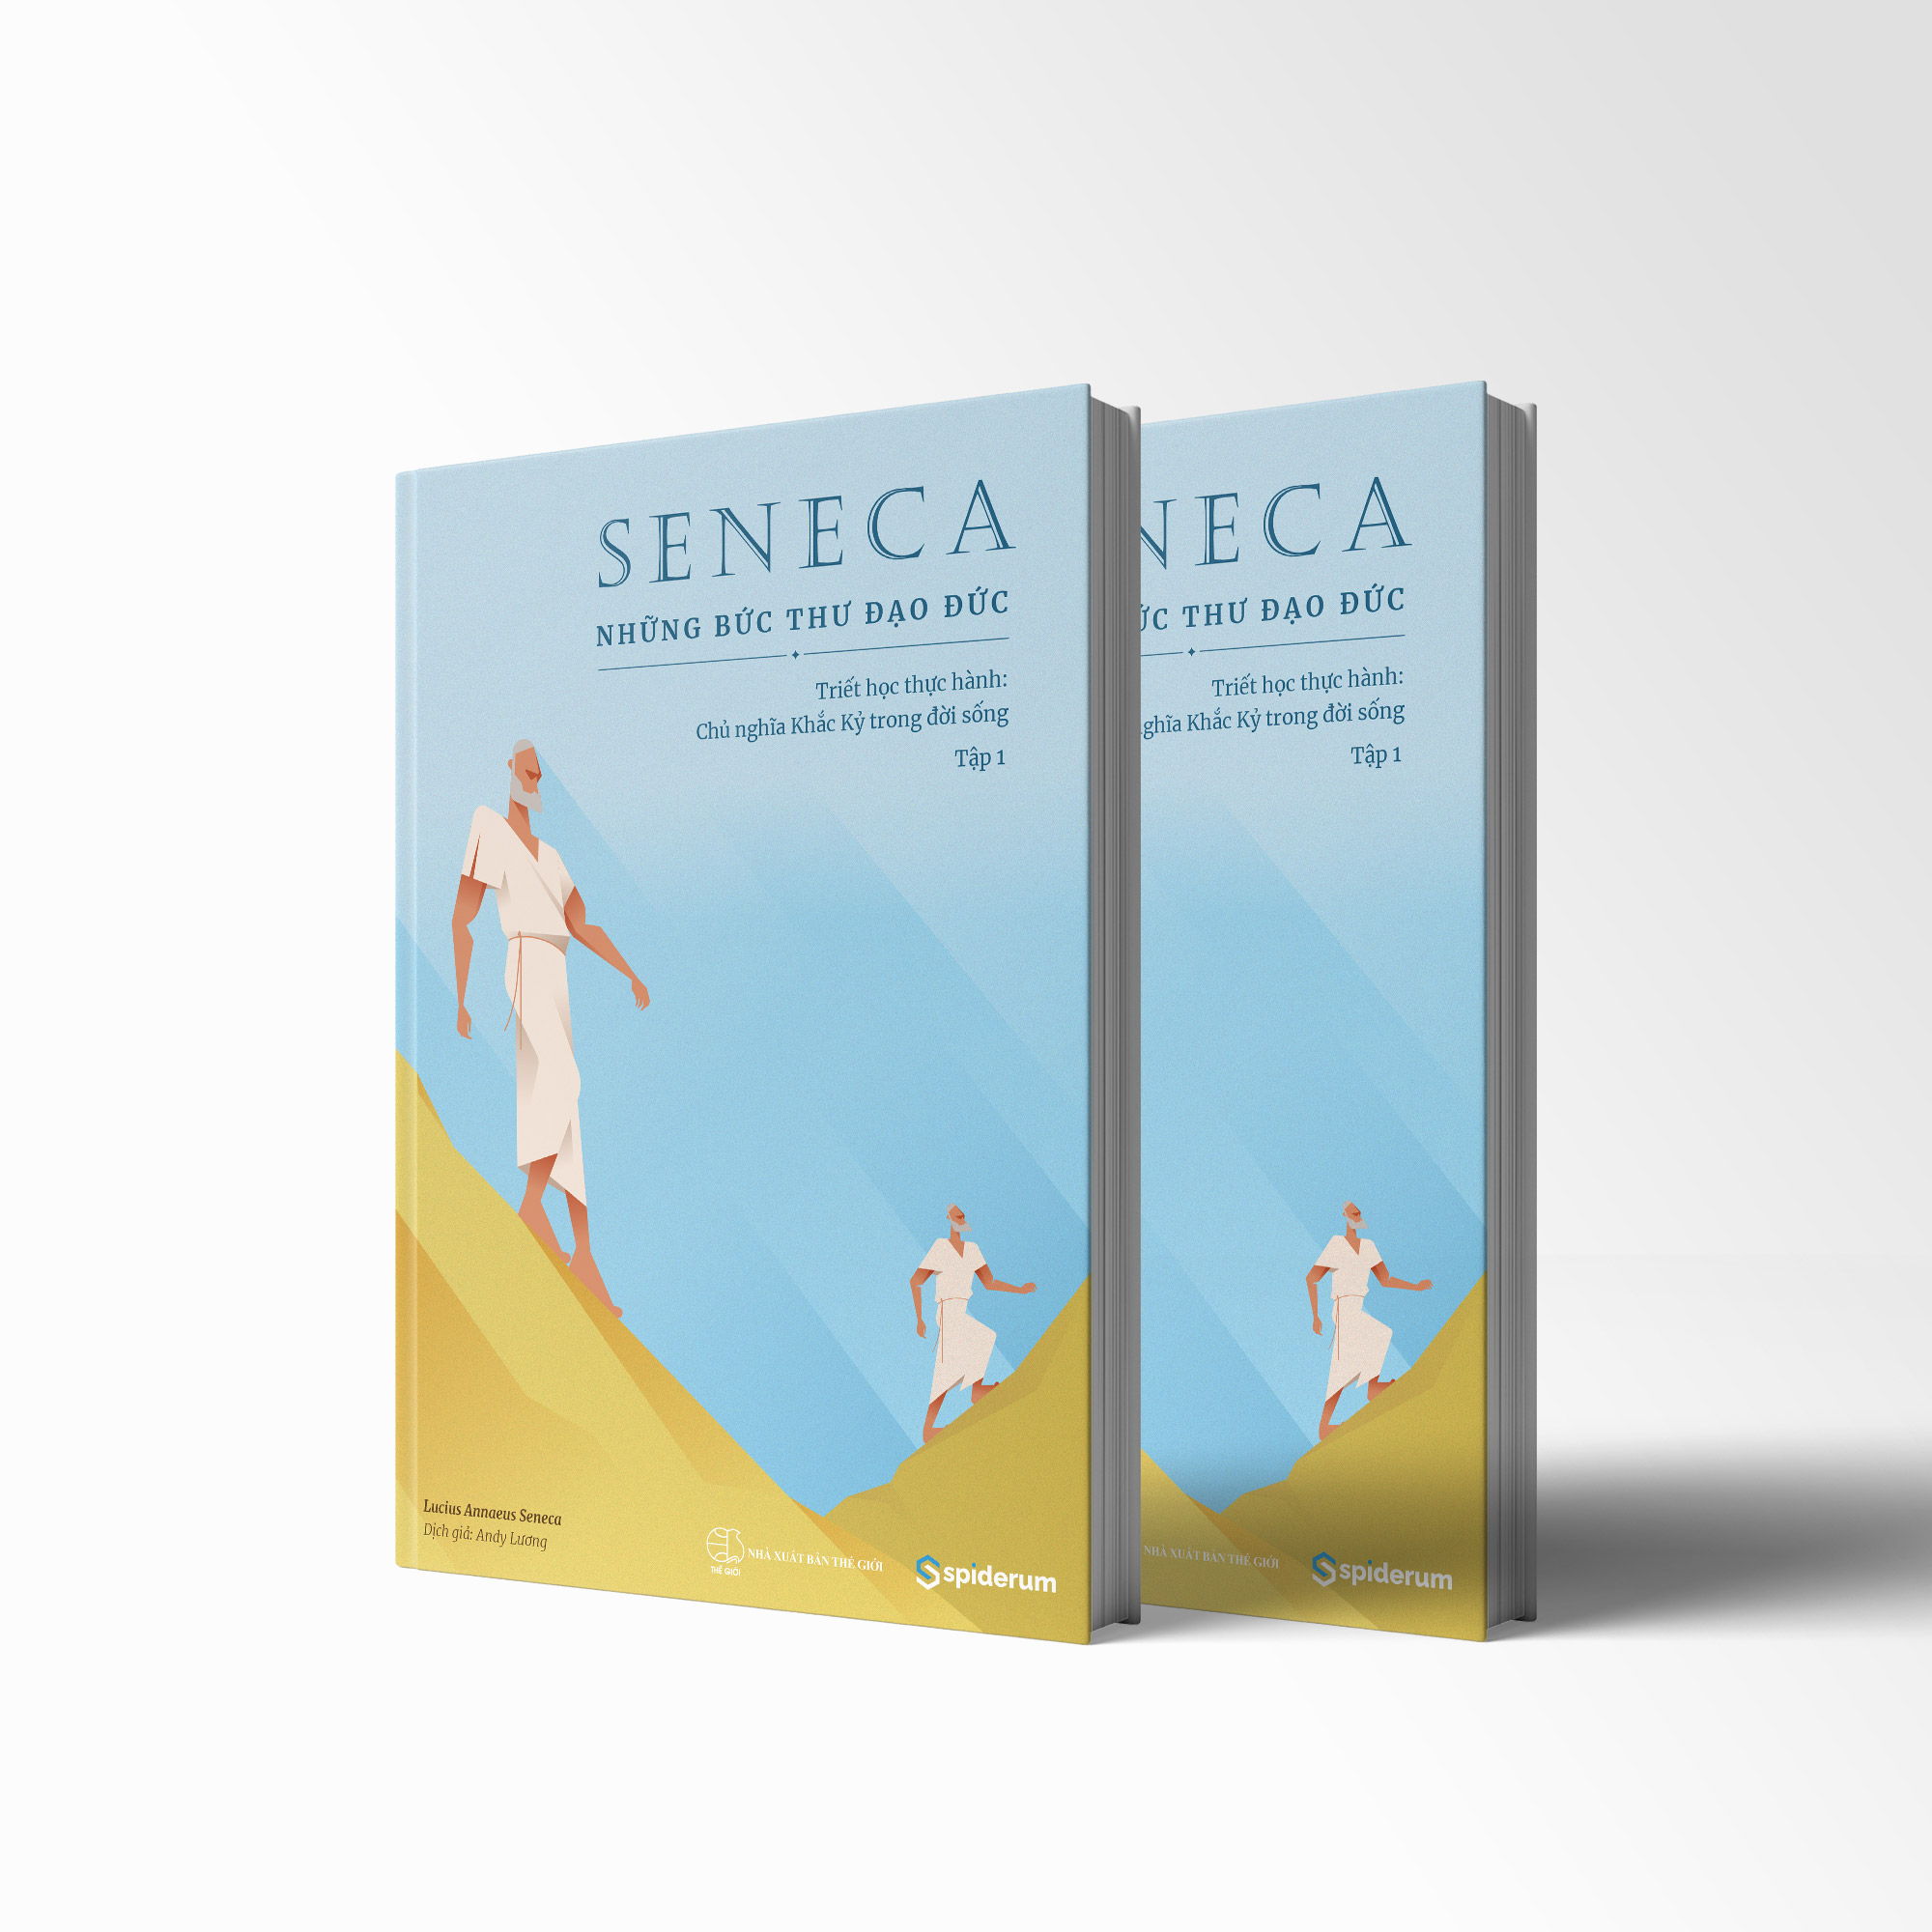 Sách Seneca: Những Bức Thư Đạo Đức – Chủ nghĩa Khắc kỷ trong đời sống - Tập 1